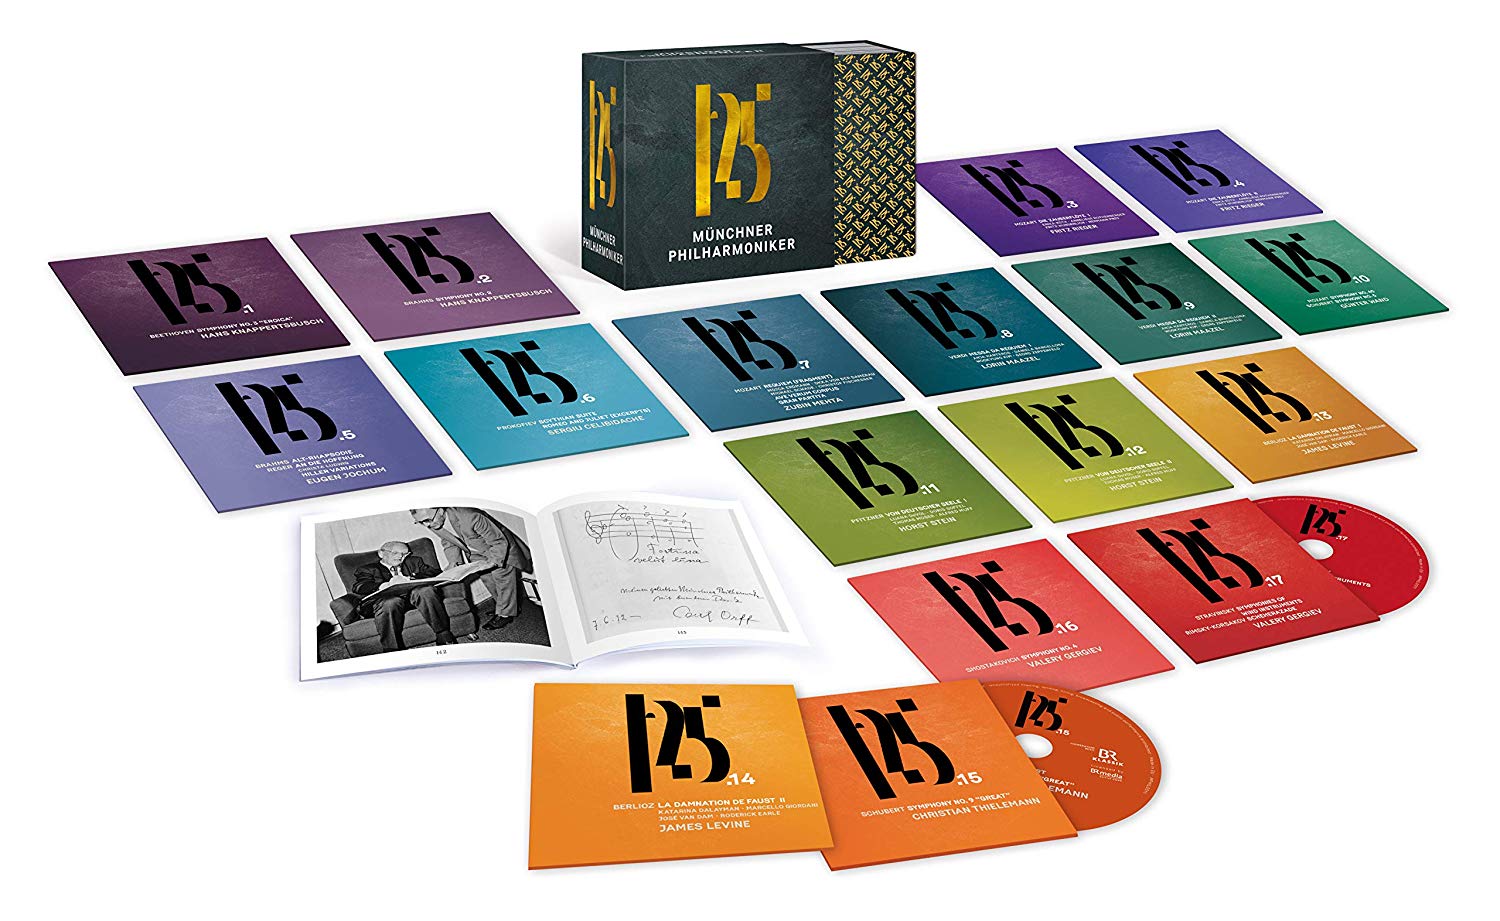 뮌헨필 125주년 기념 특별한정반 박스 세트 (125 Years Munchner Philharmoniker Boxset)